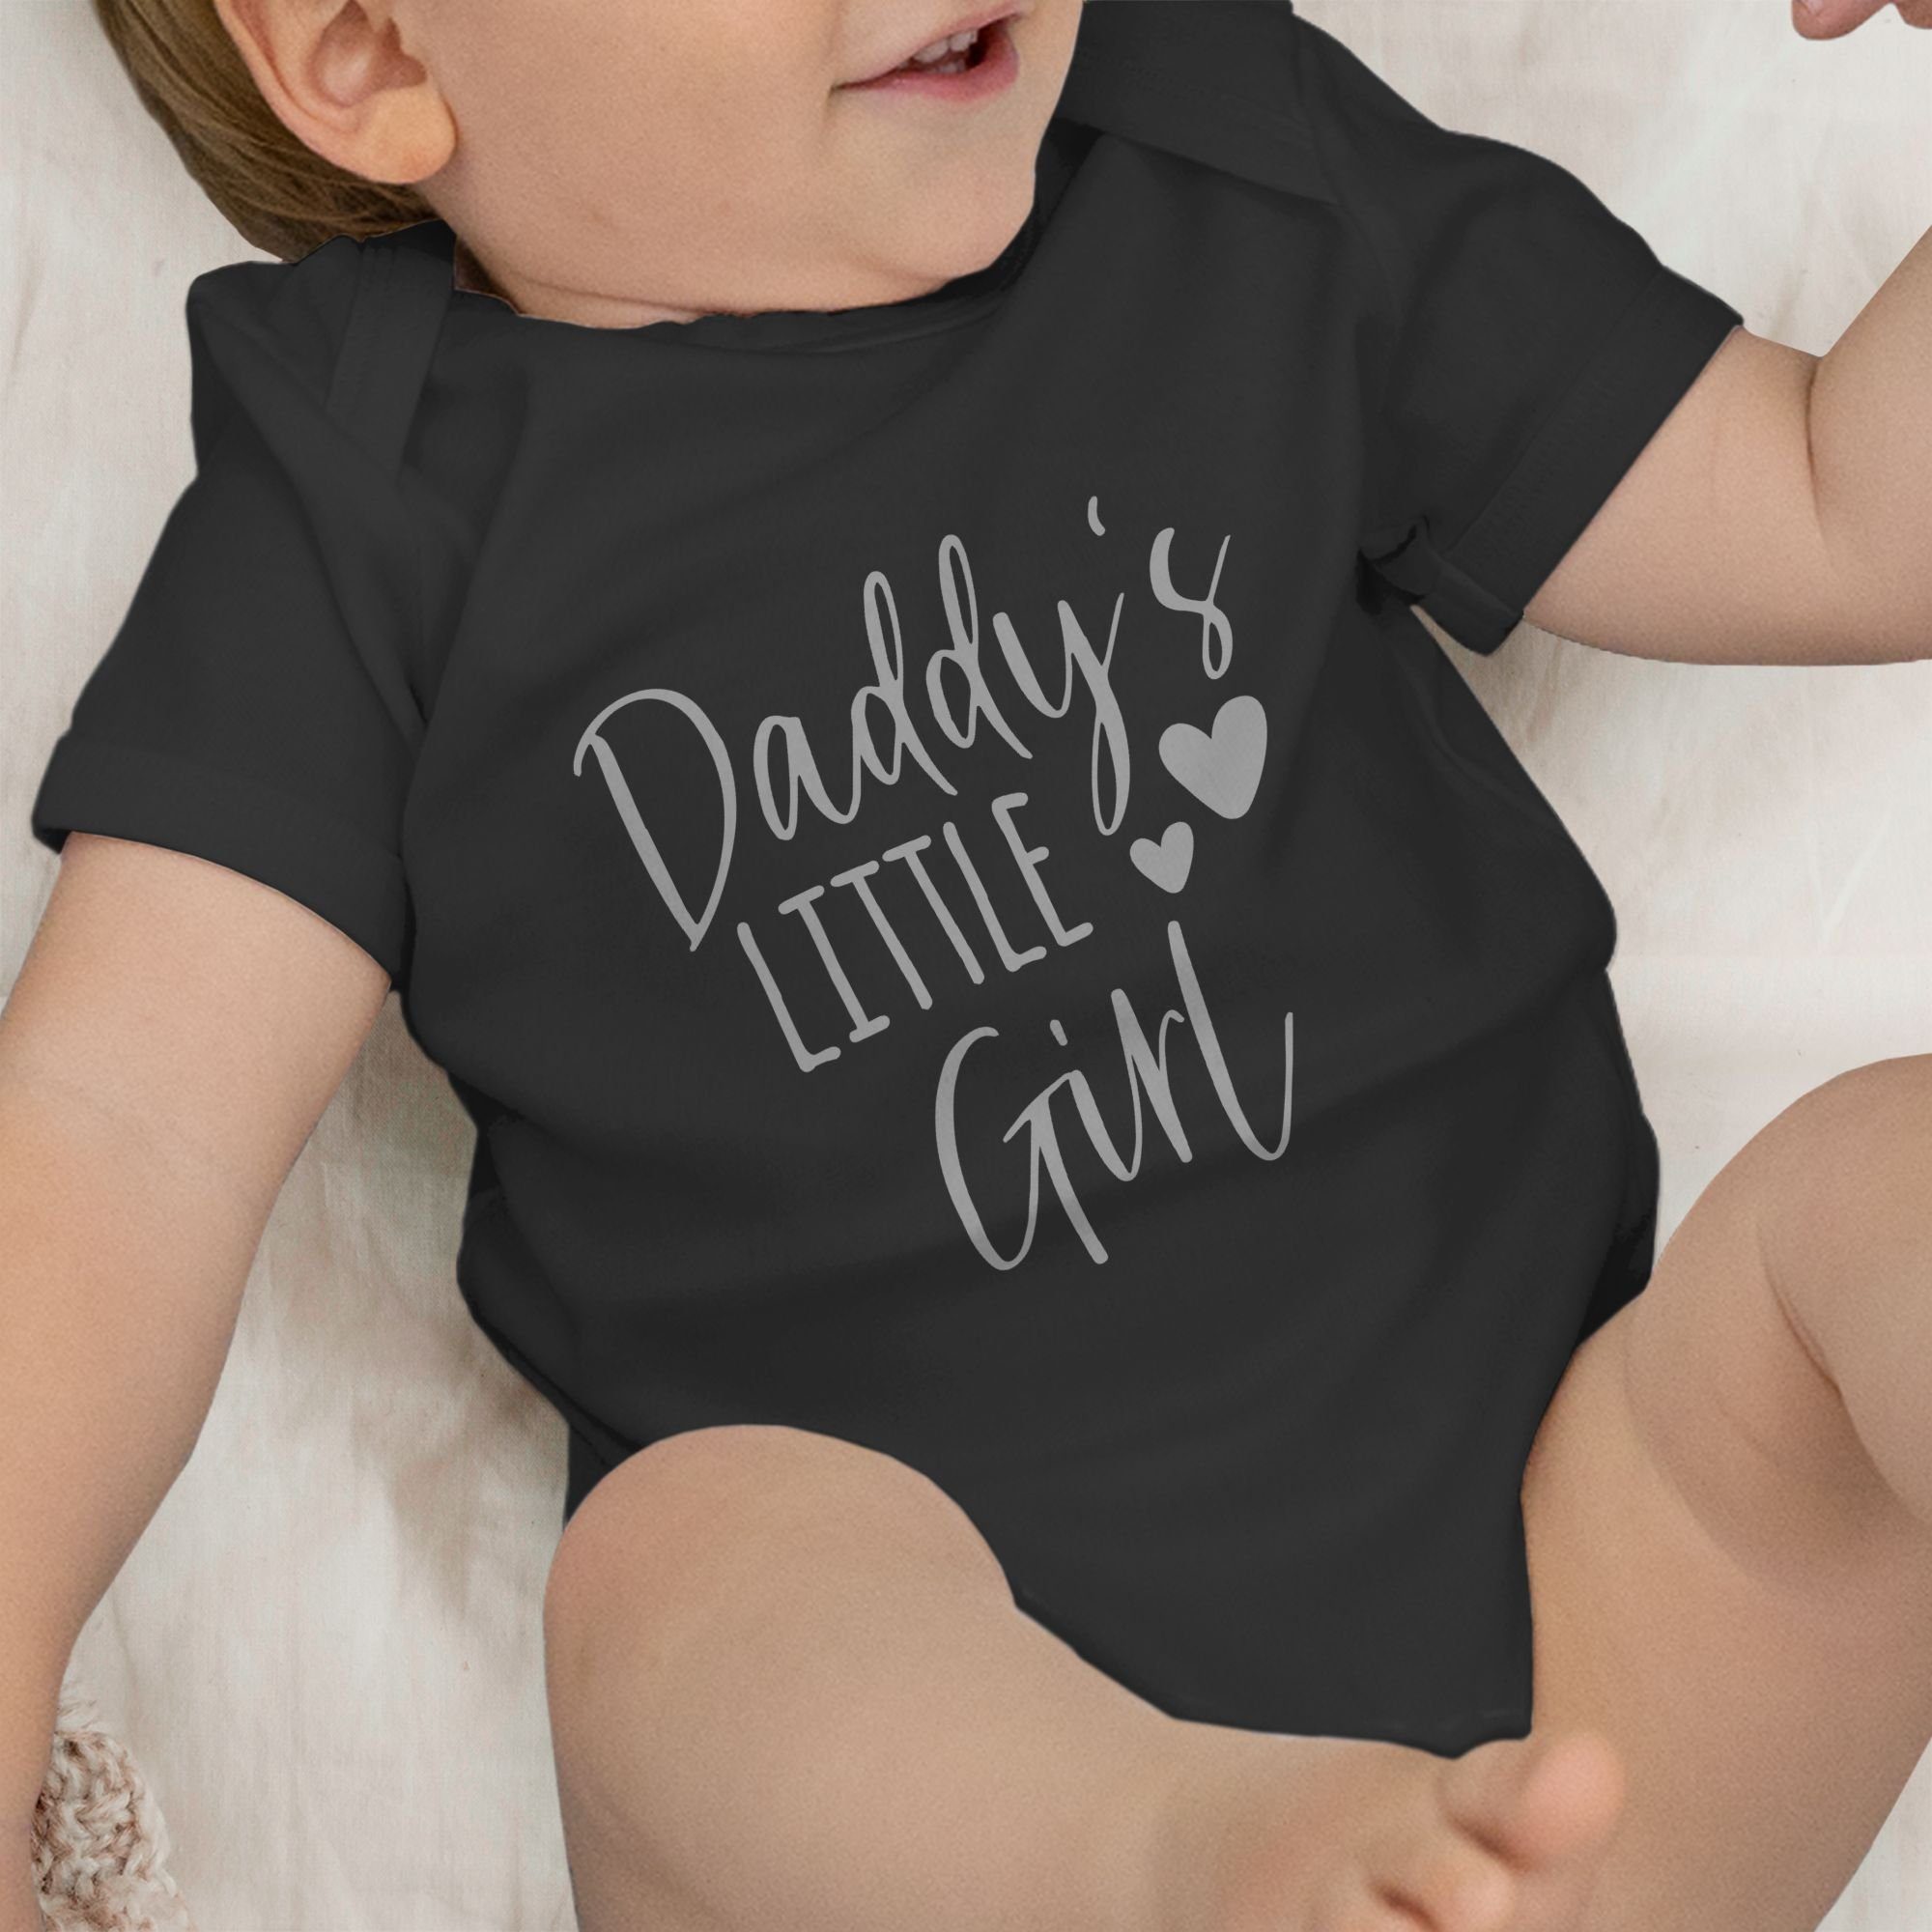 Mädchen little Daddy's 4 Geschenk Schwarz Baby Shirtracer Vatertag Shirtbody I Girl kleines Papas